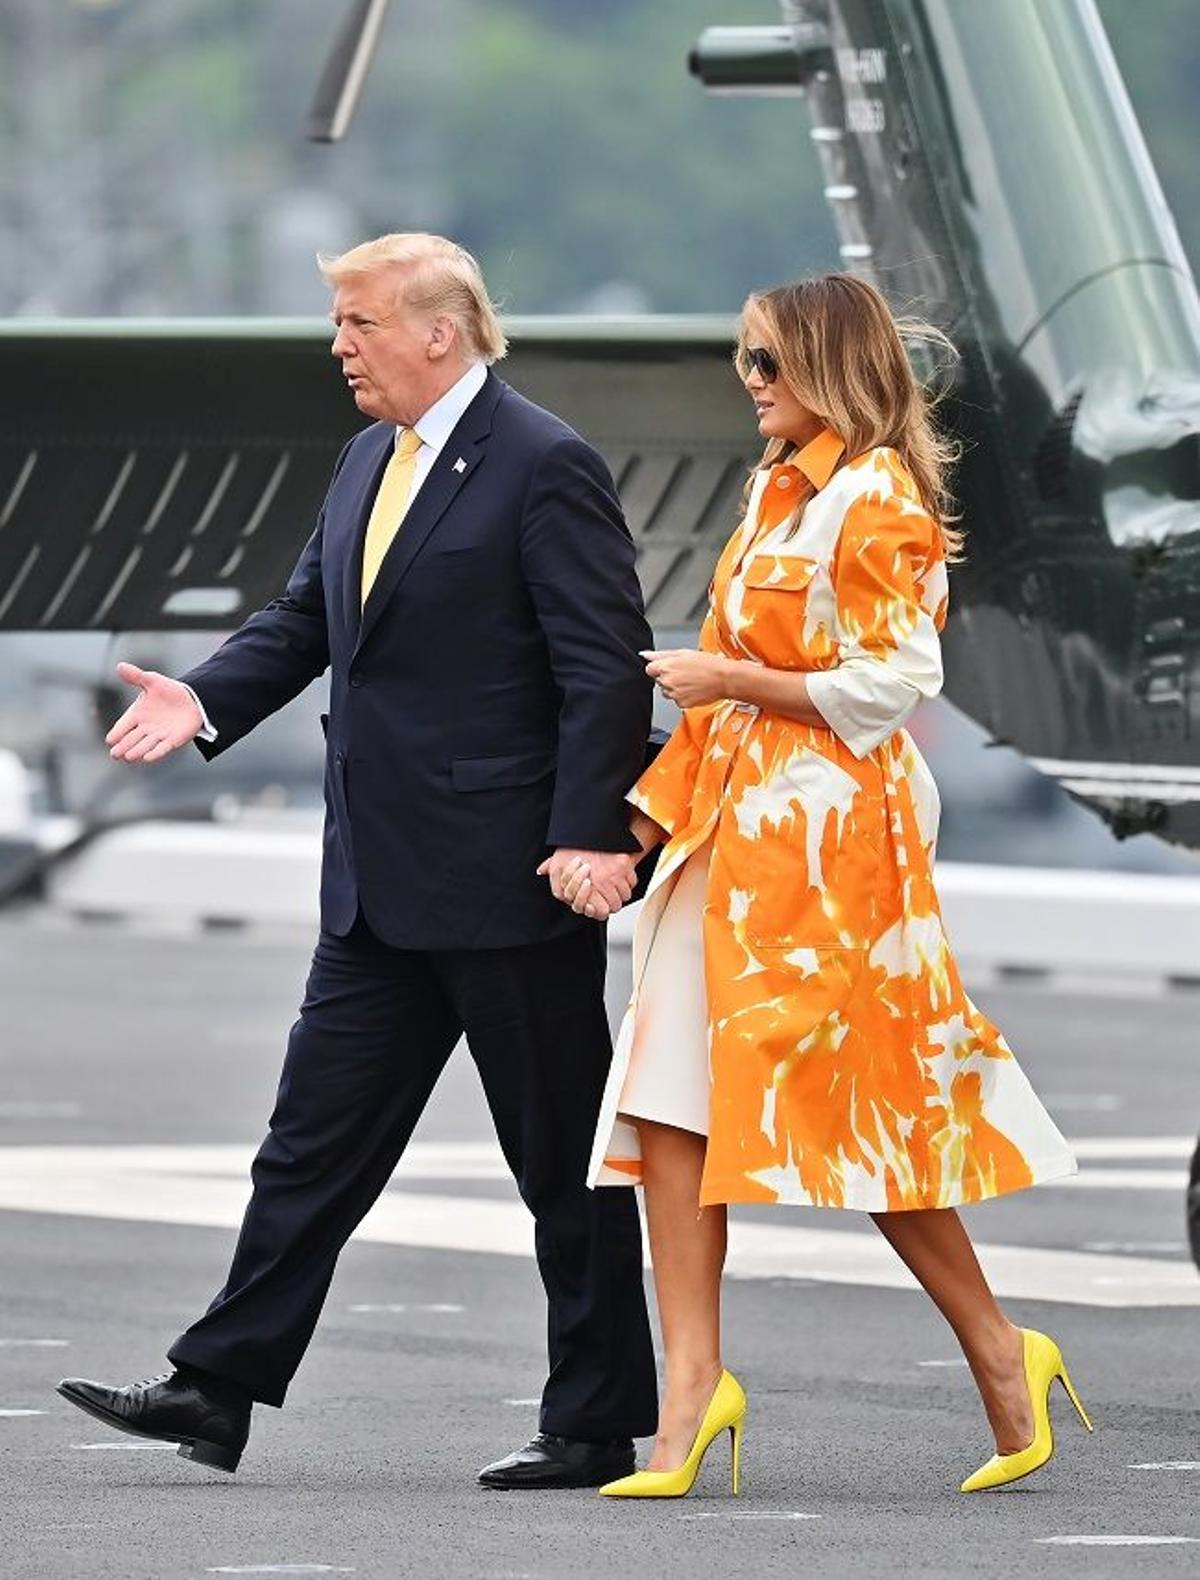 El look naranja + amarillo de Melania Trump, en su visita a la base militar de Yokosuka